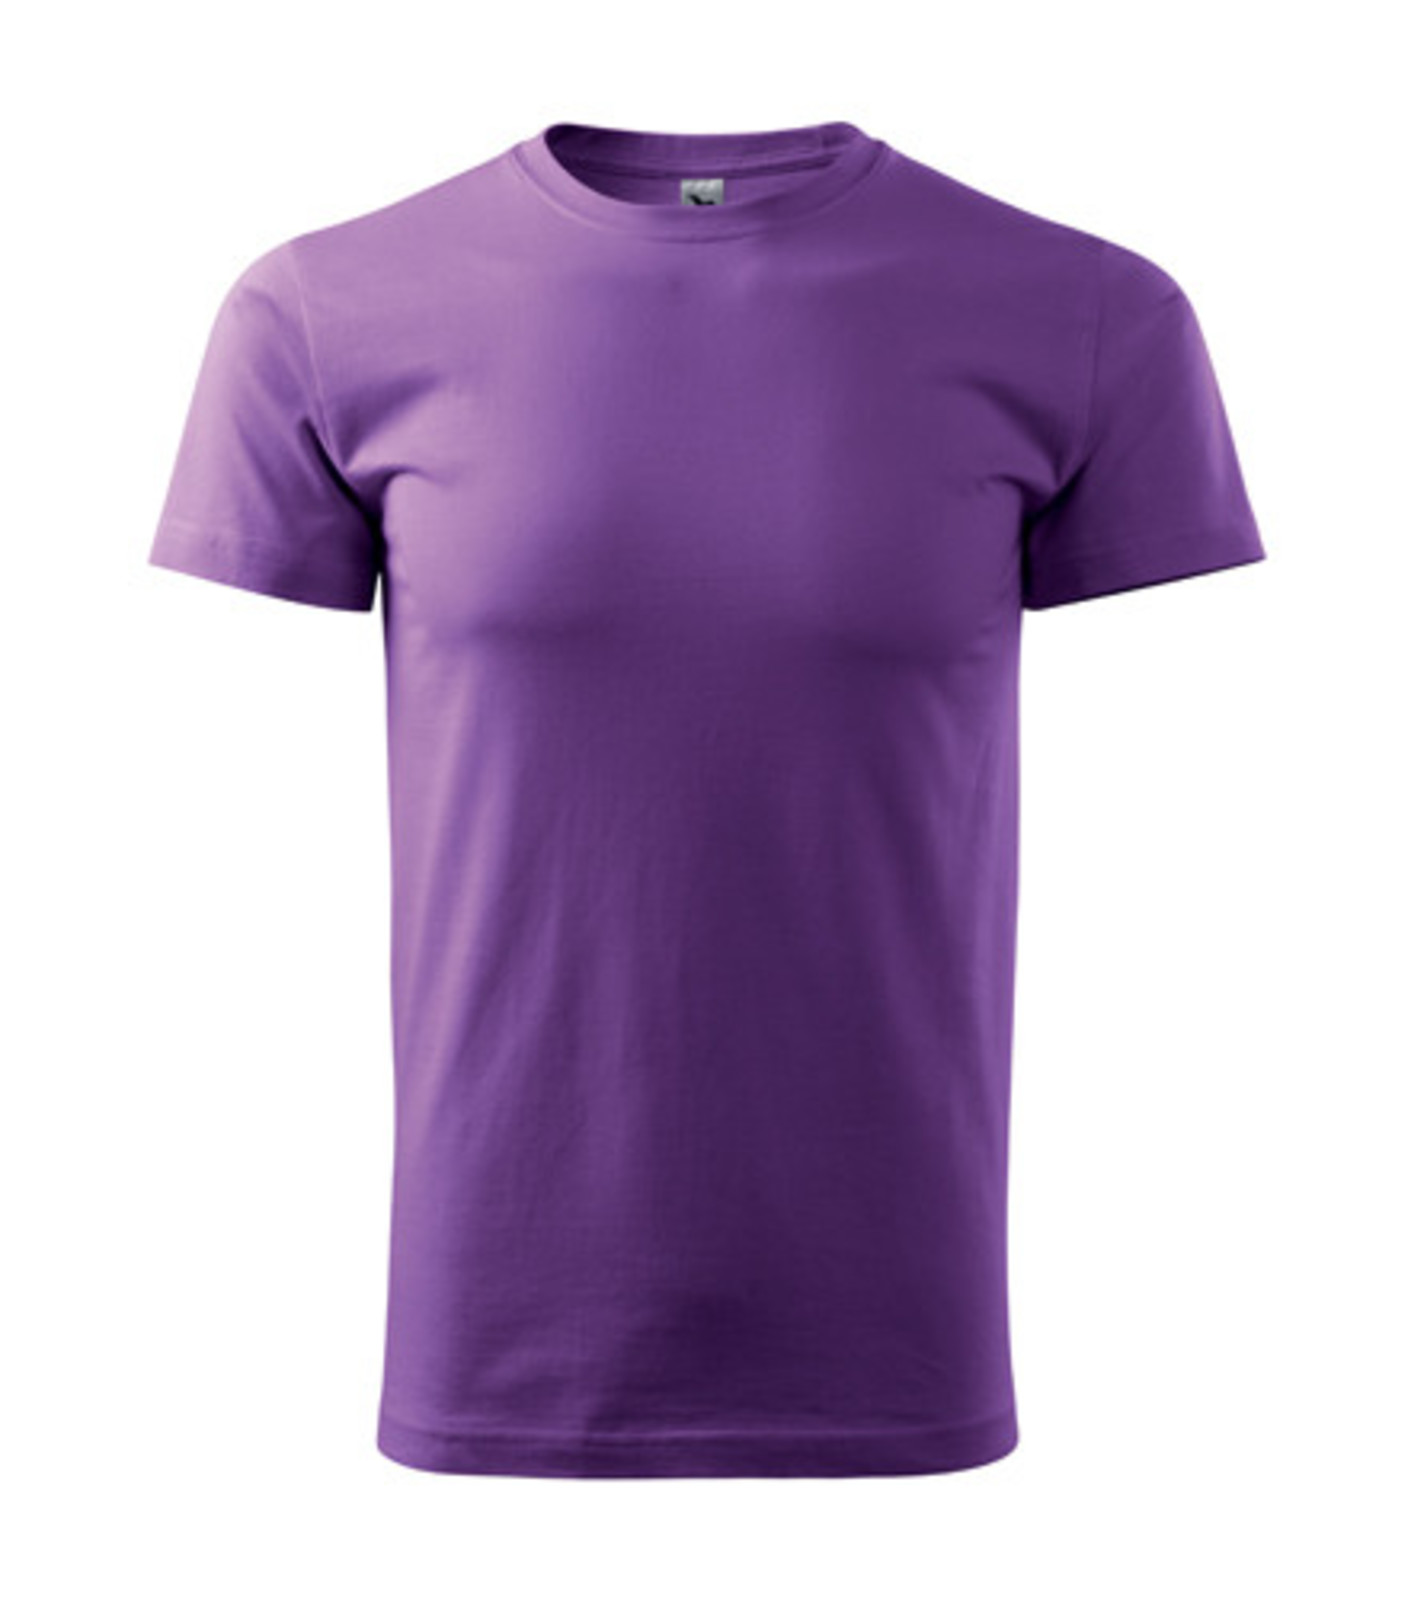 Pánske tričko Malfini Basic 129 - veľkosť: XL, farba: fialová